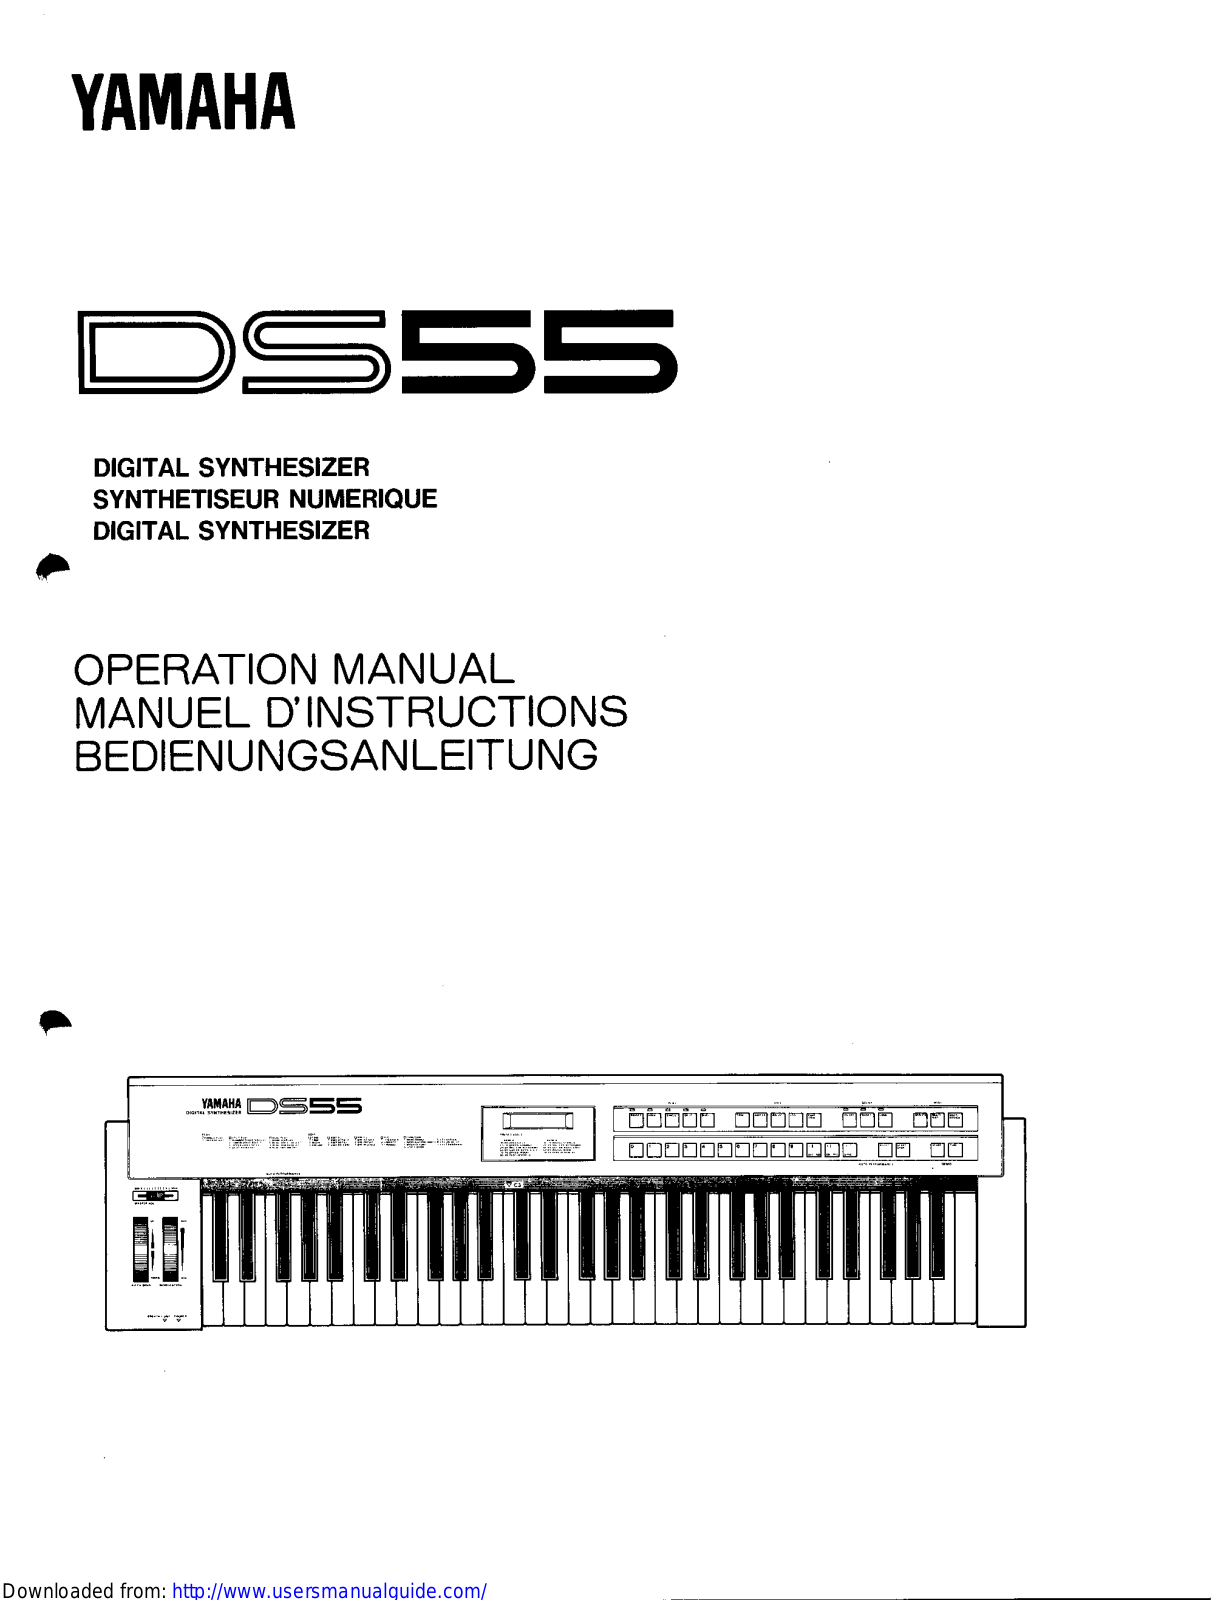 Yamaha Audio DS55 User Manual